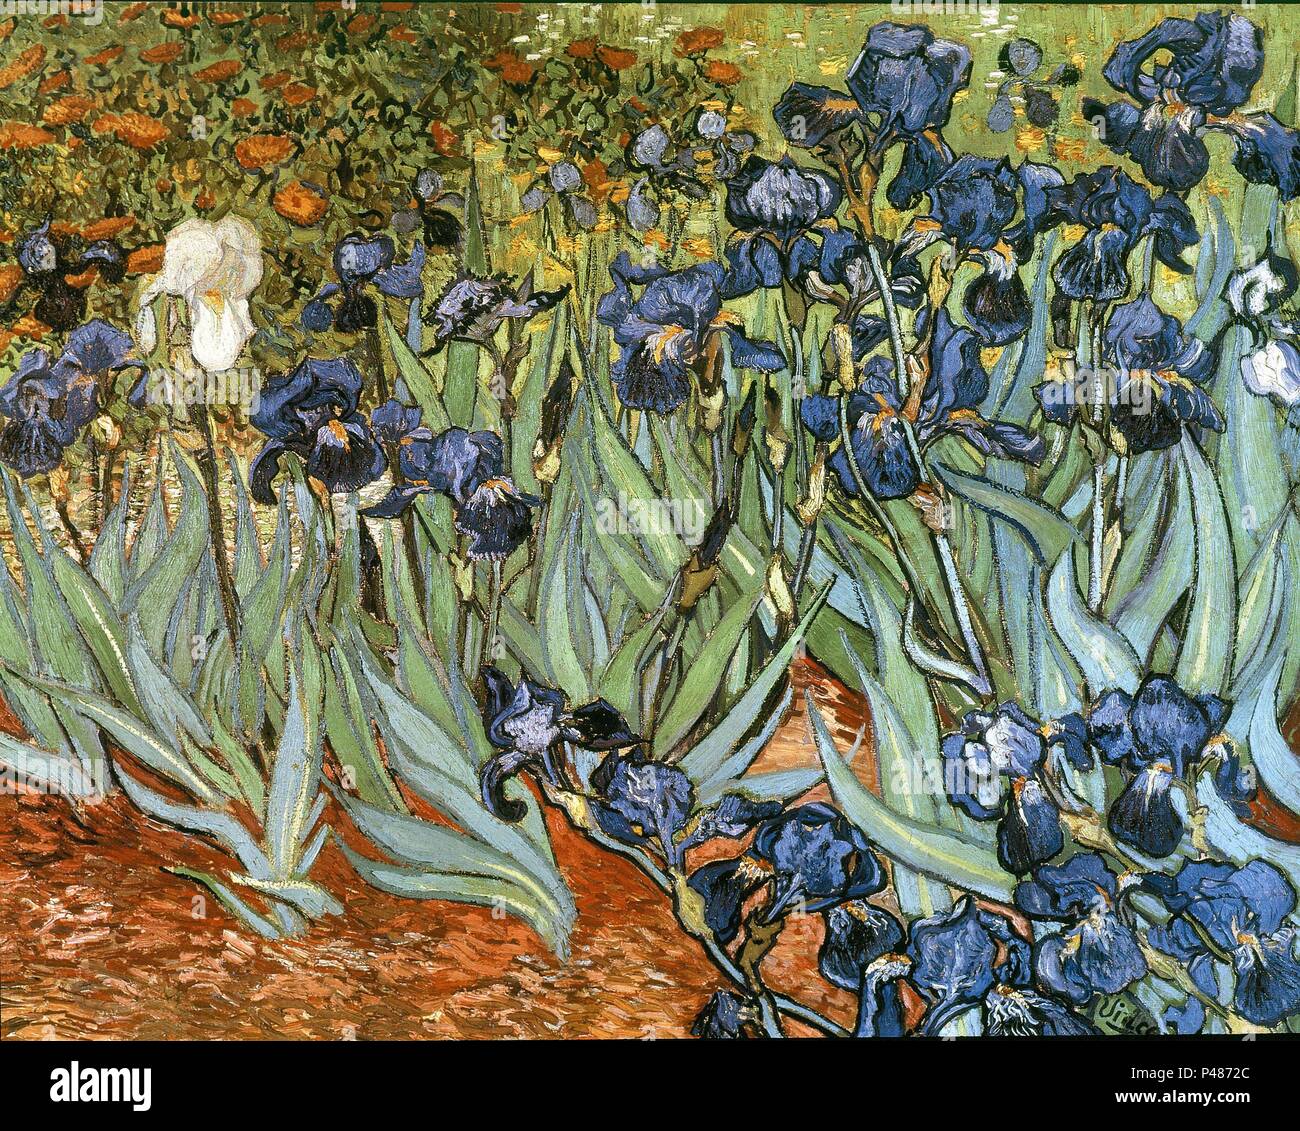 Niederländische Schule. Iris. 1889. Öl auf Leinwand (71 x 93 cm). Los Angeles, Paul Getty Collection. Autor: Vincent van Gogh (1853-1890). Standort: Private Collection, LOS ANGELES - Kalifornien. Stockfoto